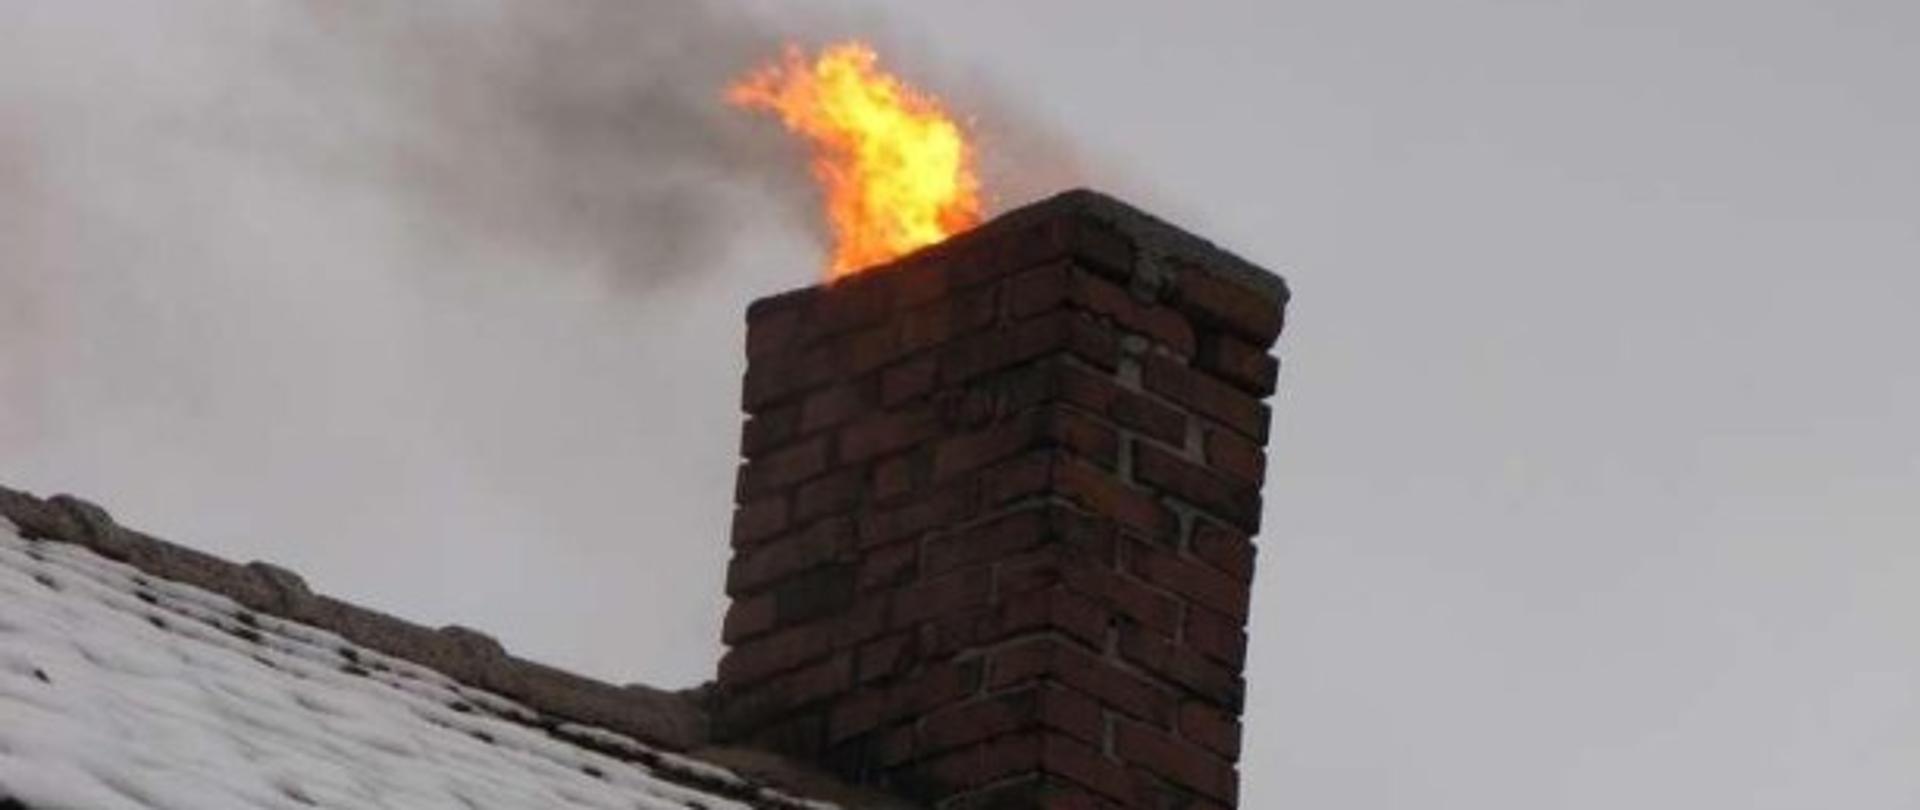 Na zdjęciu widać przysypaną warstwą śniegu połać dachu krytego dachówka ceramiczną, komin wykonany z cegły pełnej i wydobywający się z niego płomień ognia. 